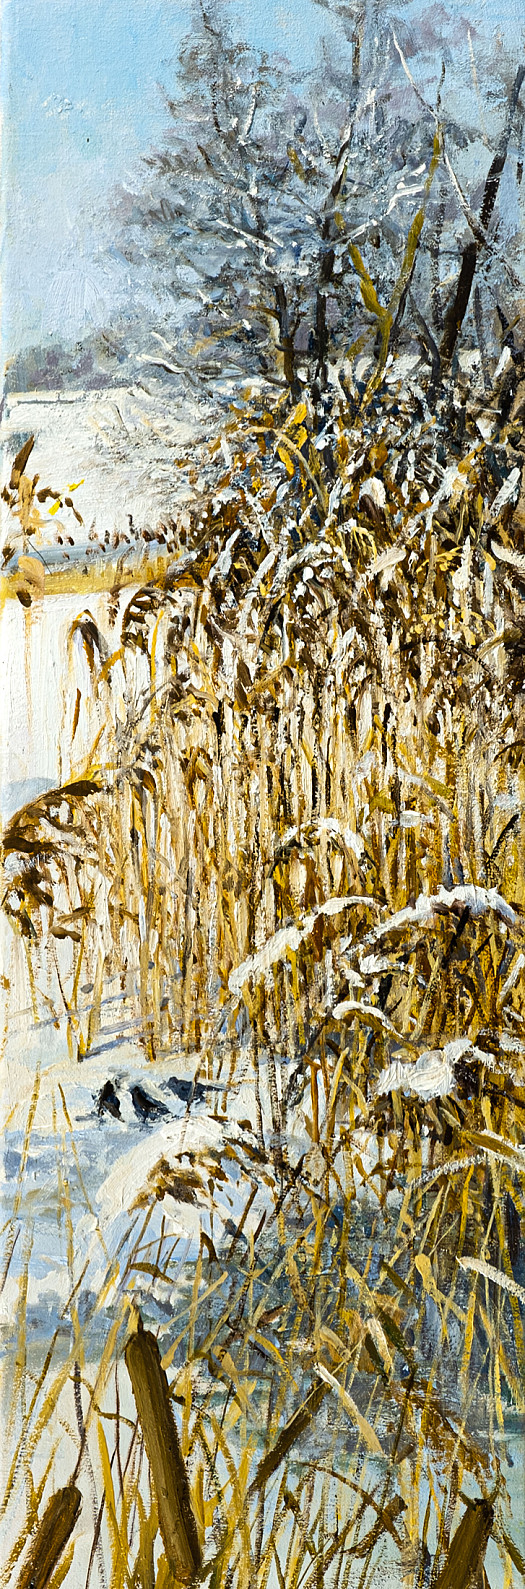 Frozen Reeds, Wimpole